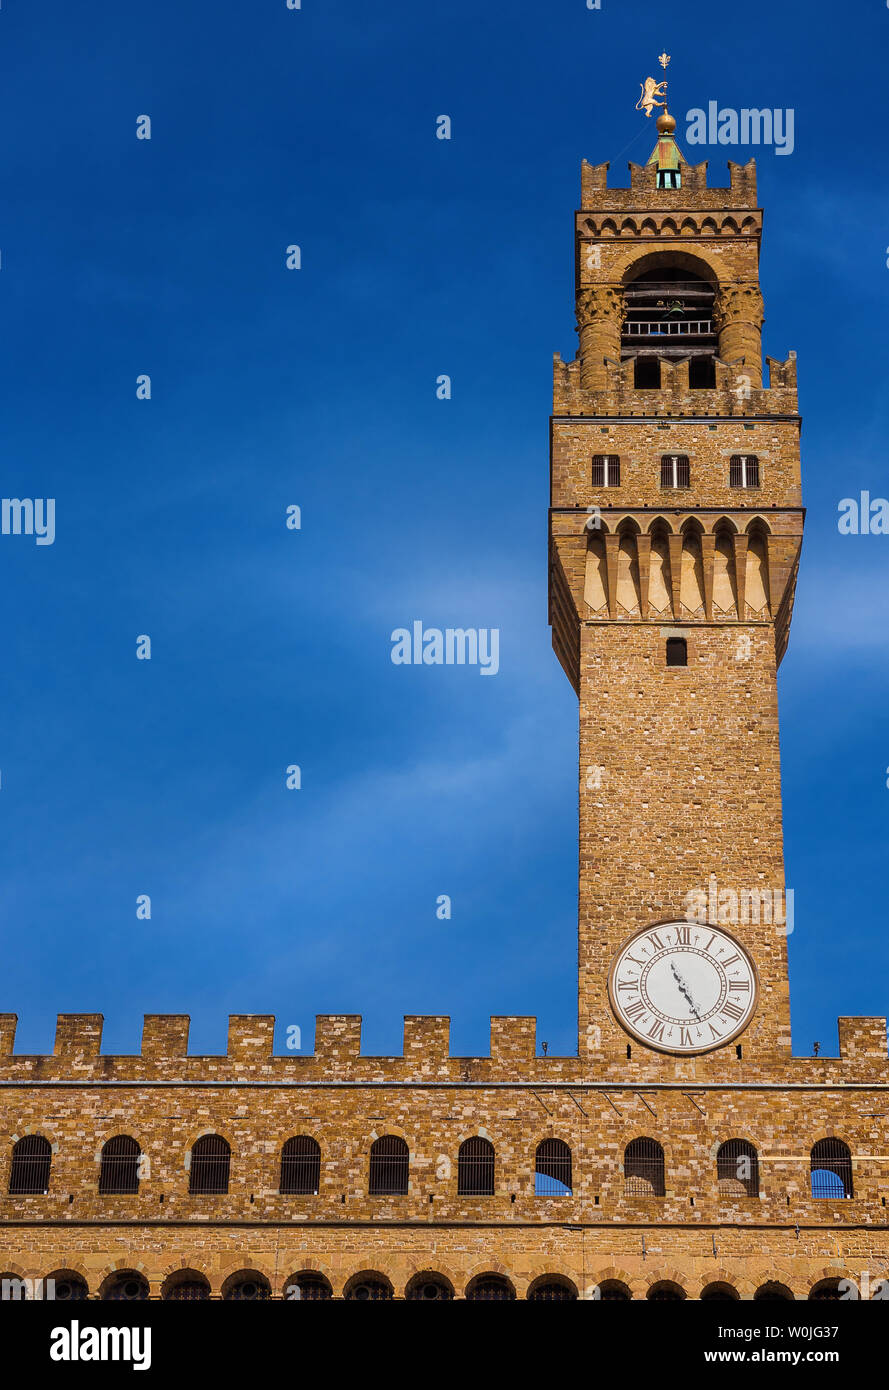 Palazzo Vecchio (palacio viejo), la hermosa Florencia ayuntamiento construido en el siglo XIV y diseñado por el famoso arquitecto medieval Arnolfo di C Foto de stock